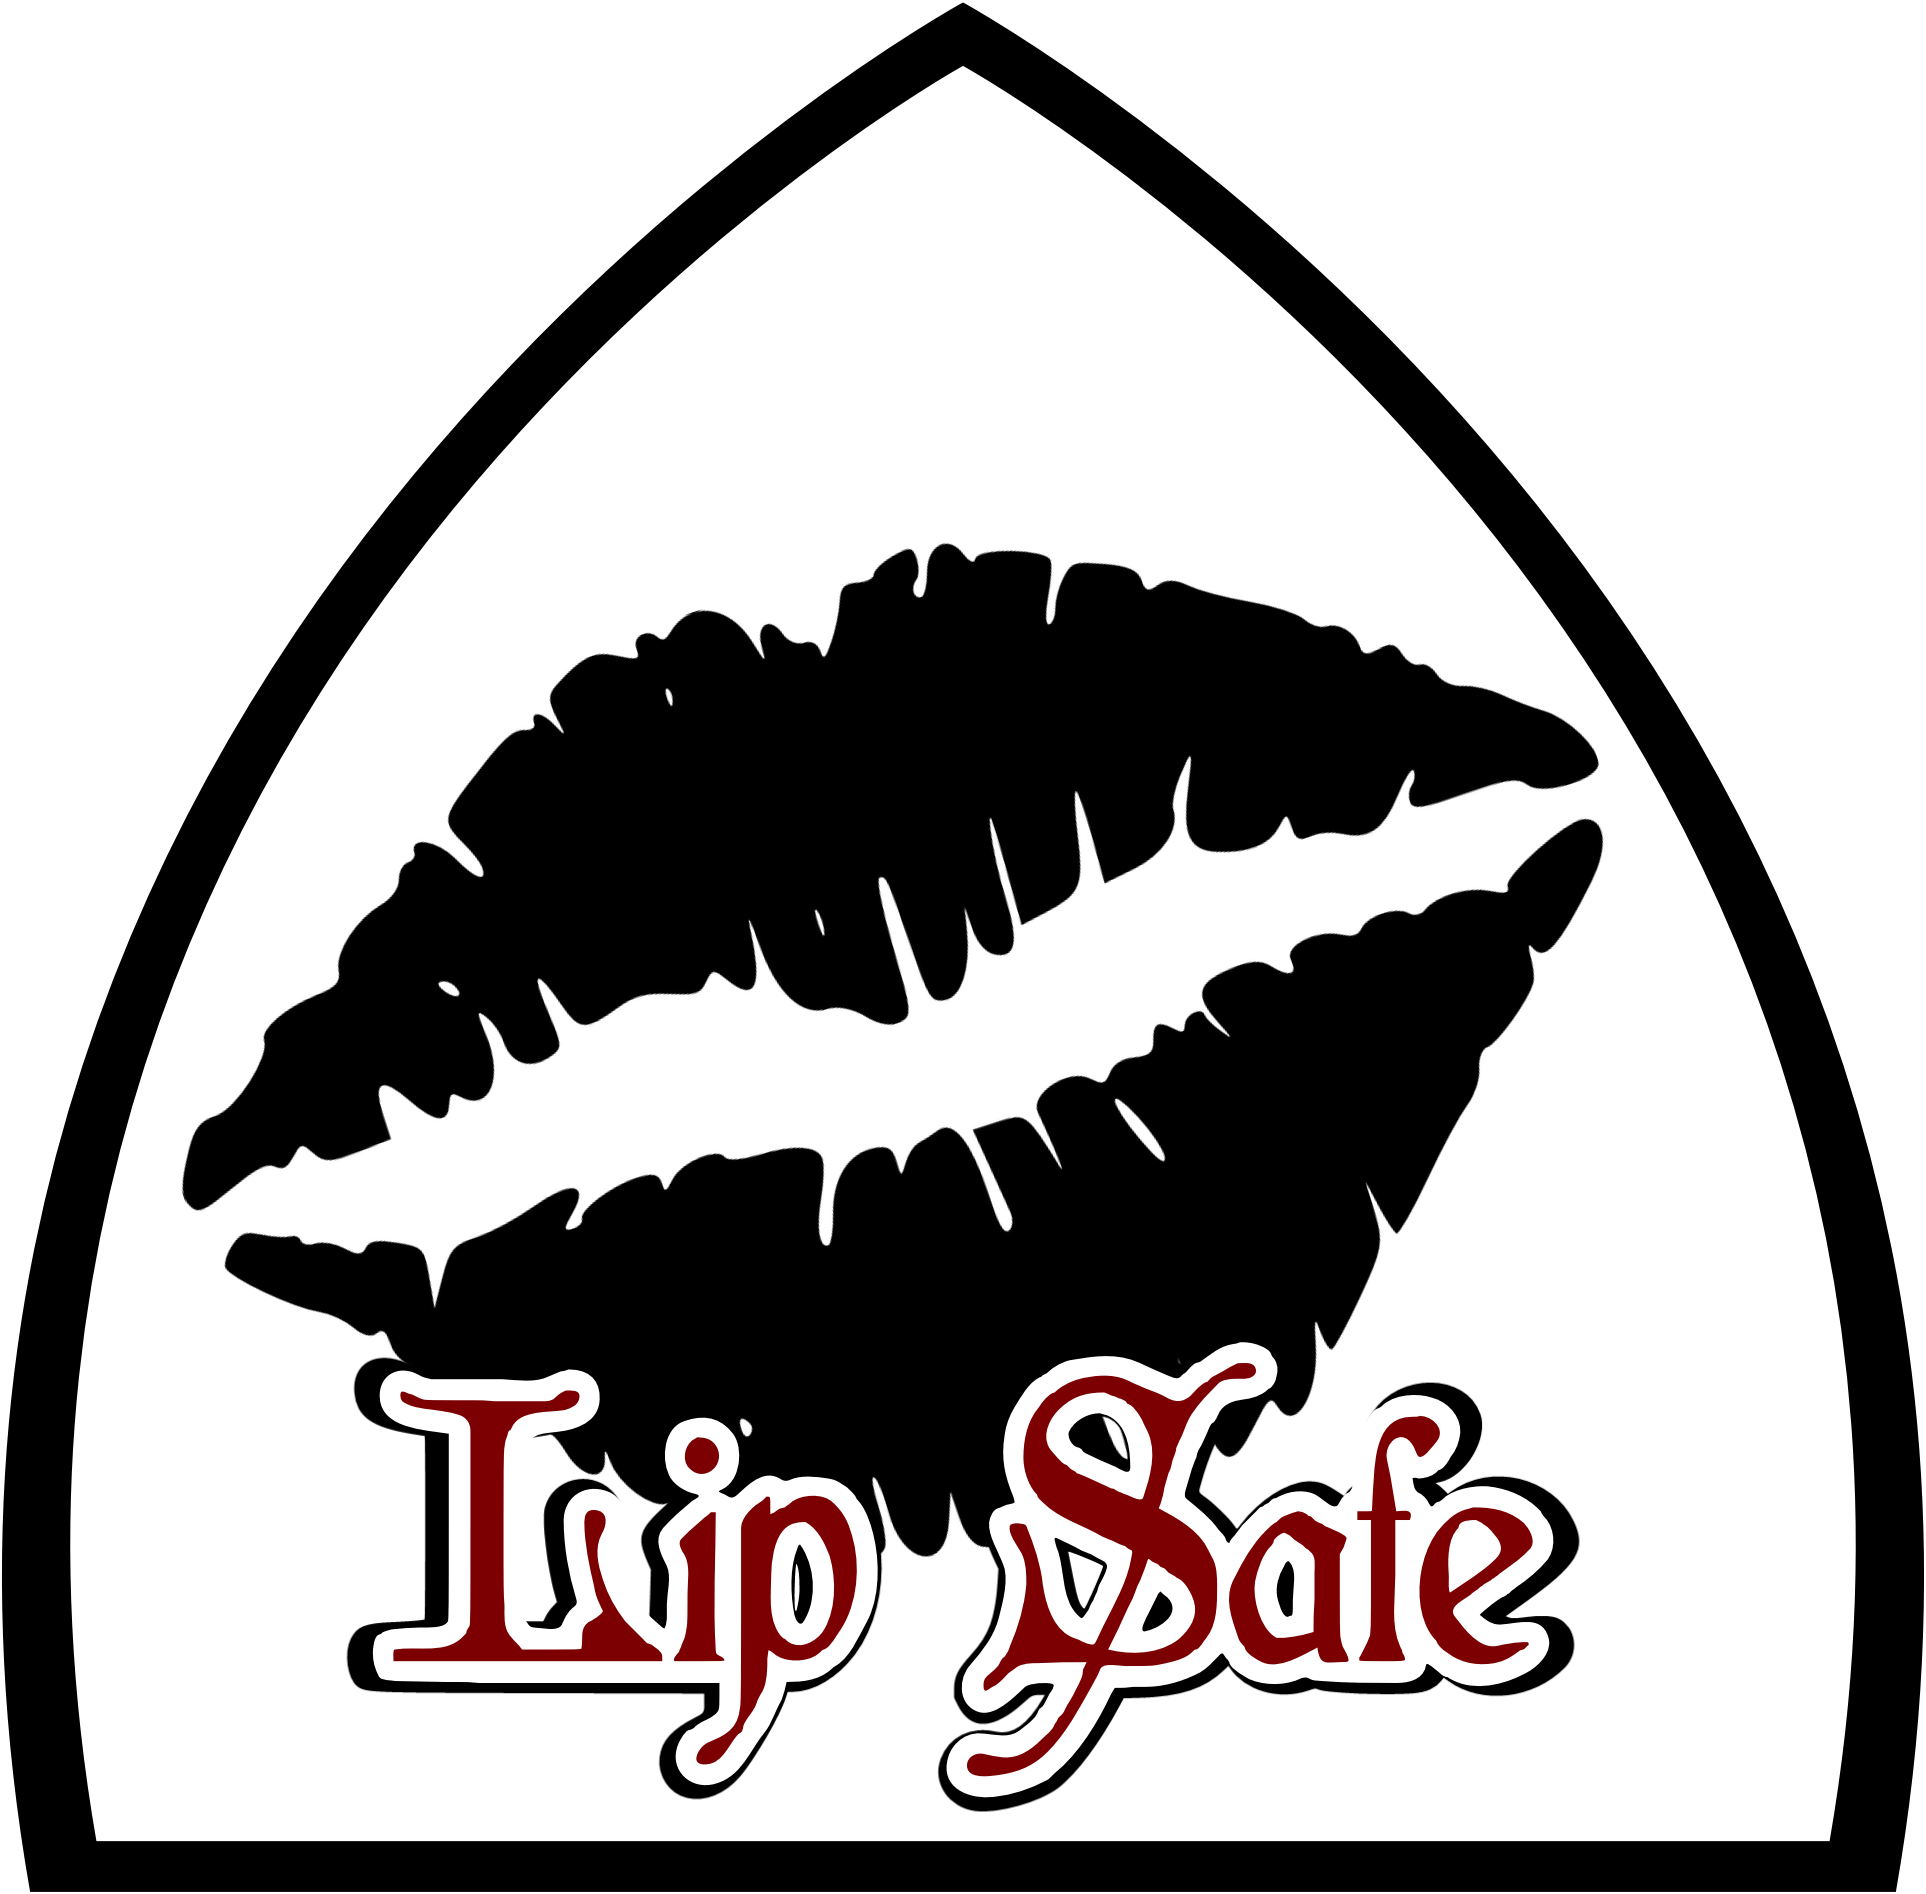 lip-safe-image.png